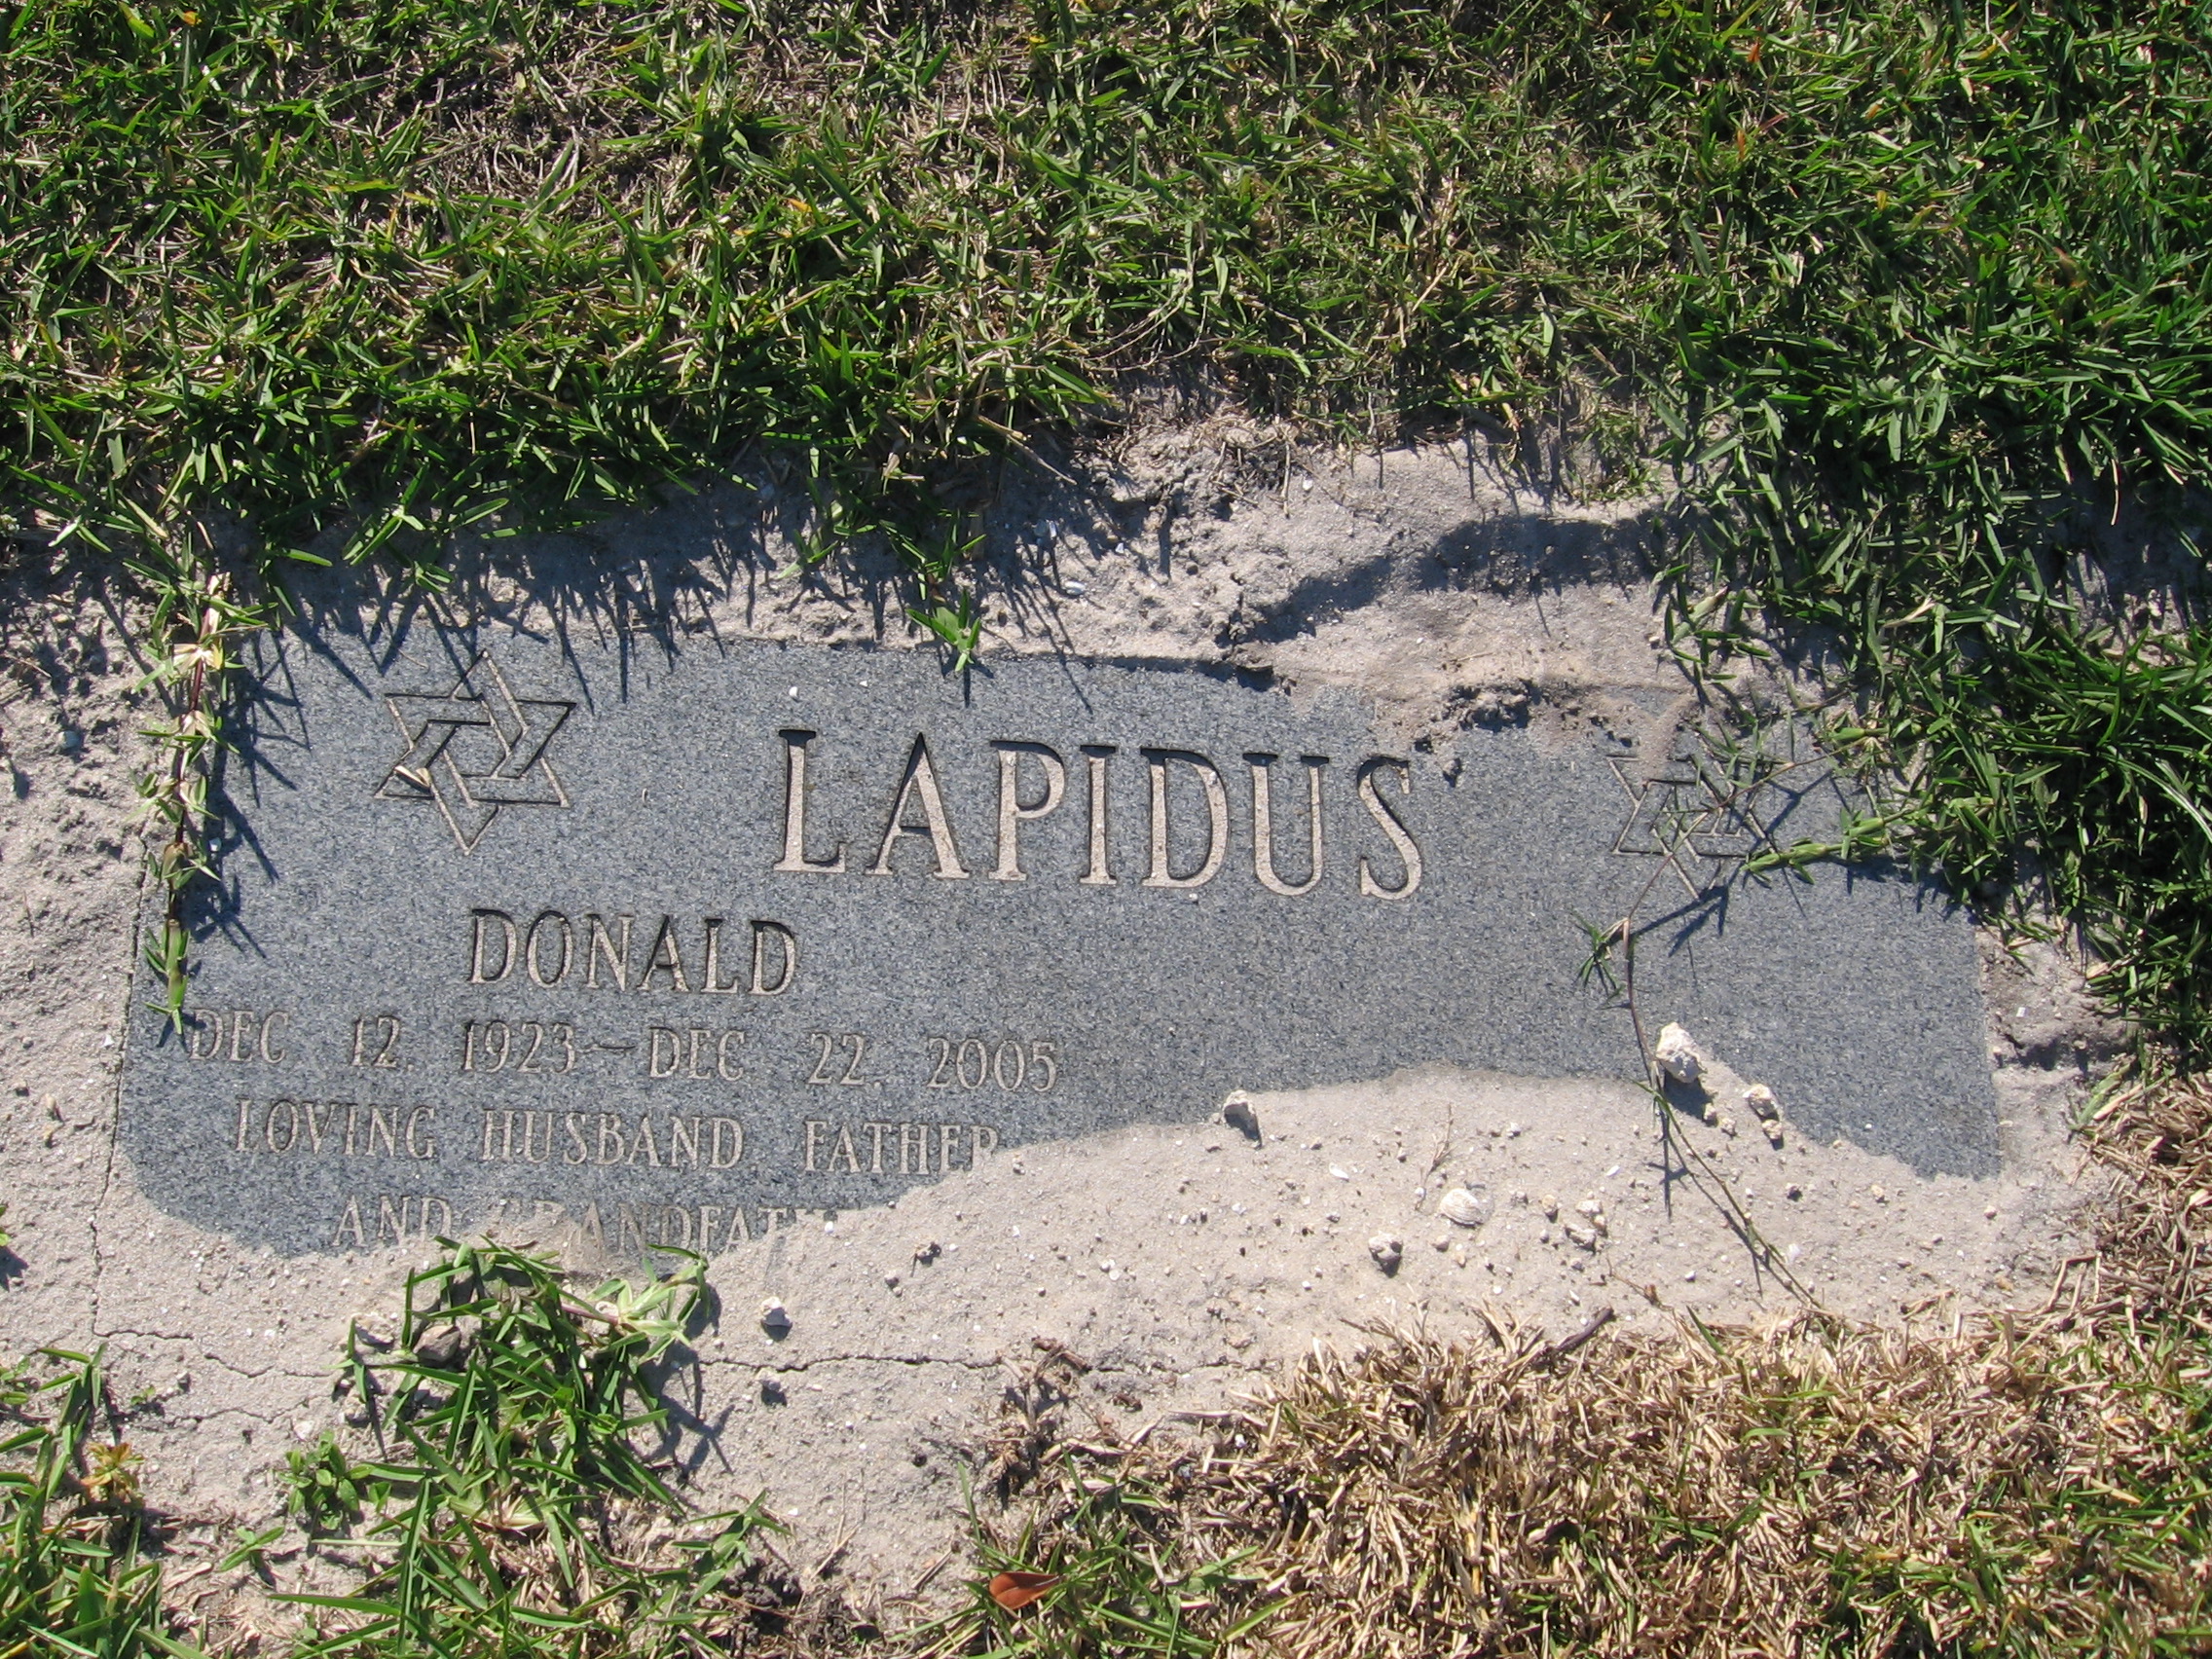 Donald Lapidus